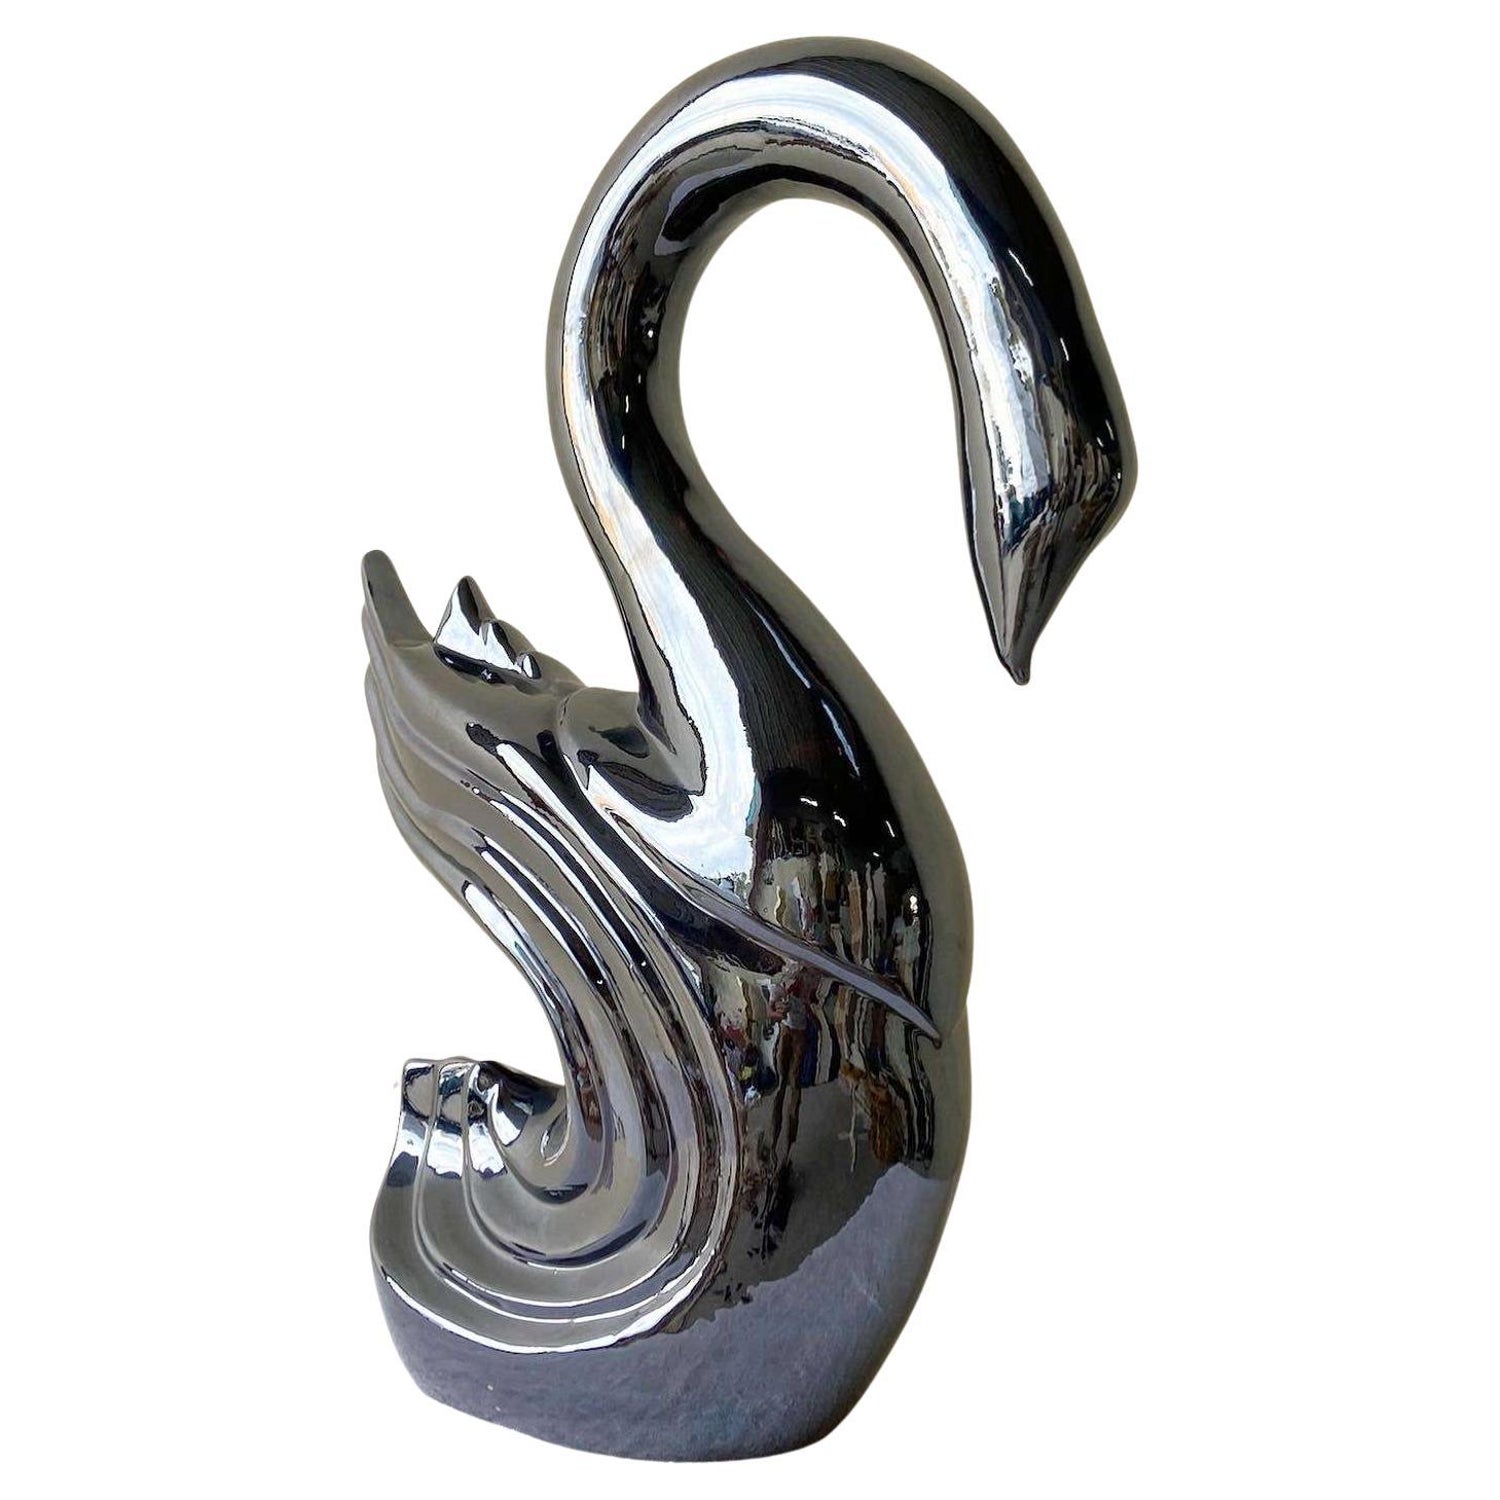 Vintage Mid Century Modern Brass Swan Sculpture by Dara International